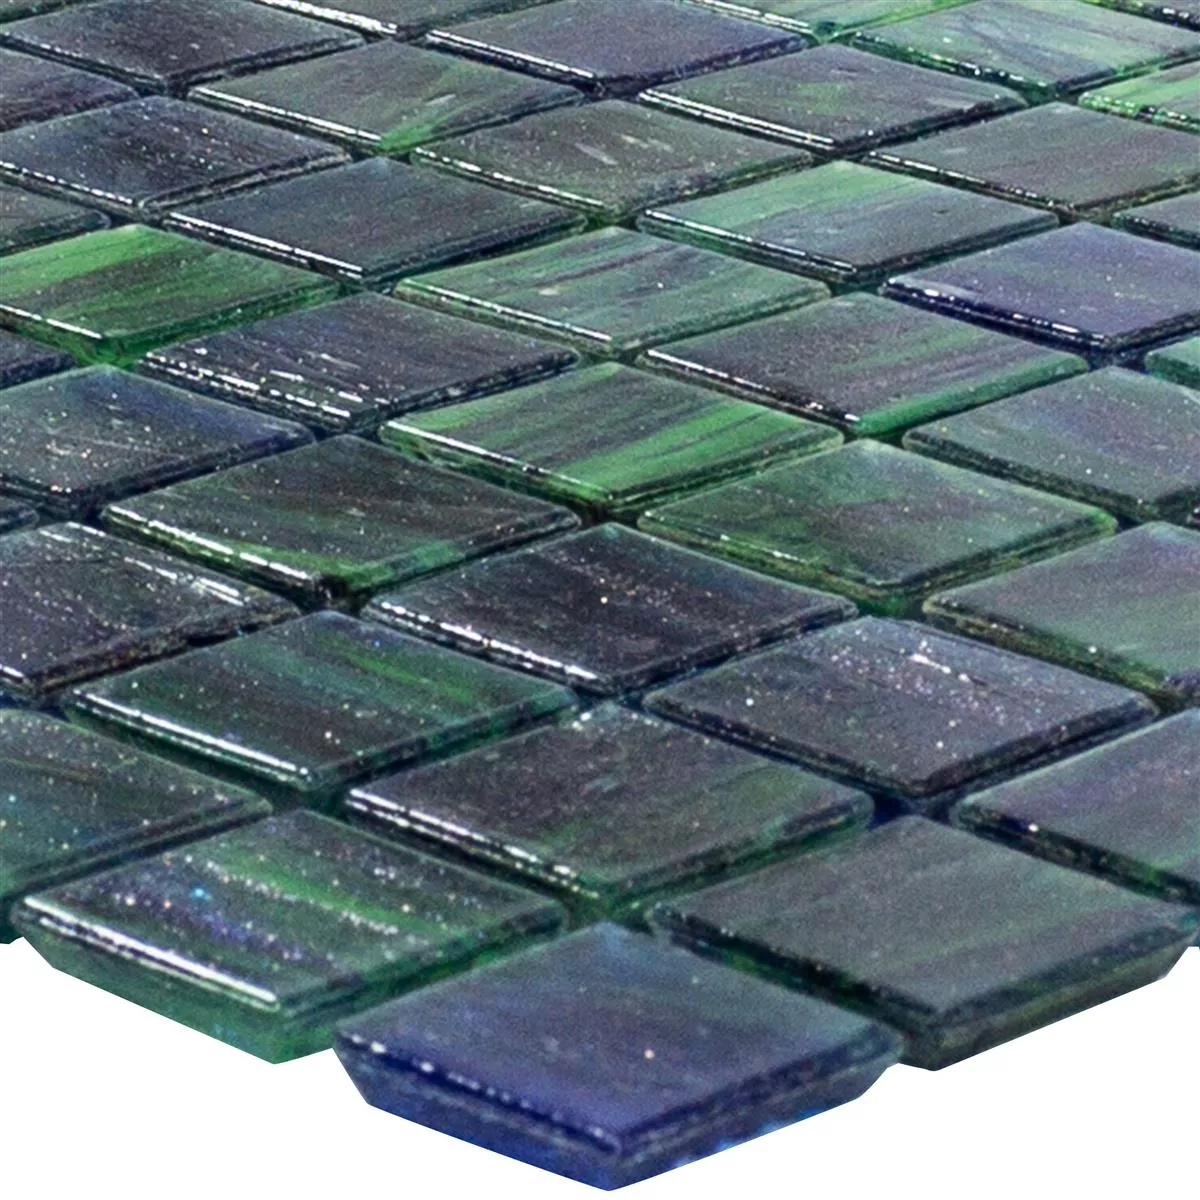 Mozaiki Szklana Płytki Catalina Niebieski Zielony Mix